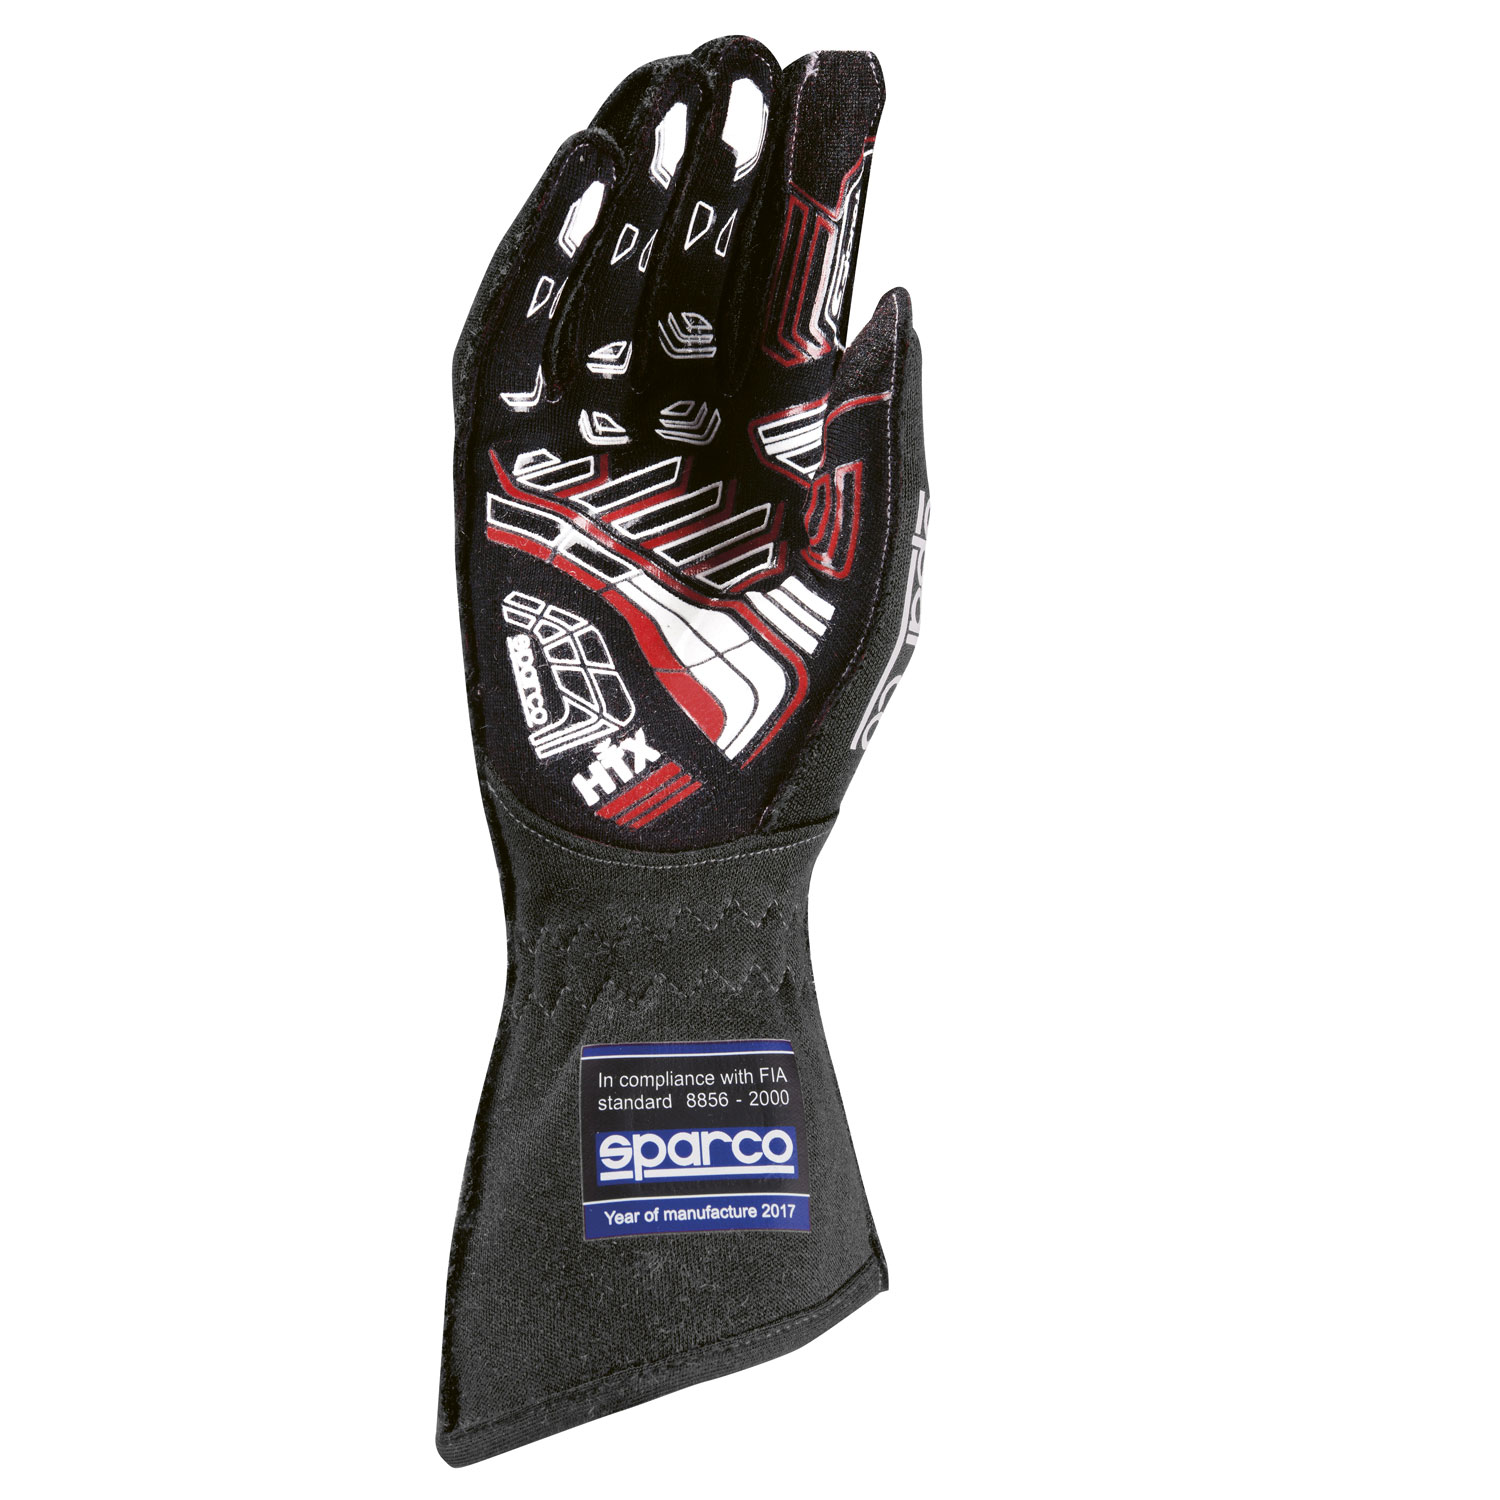 Sparco Handschuh Arrow RG-7, schwarz/grau